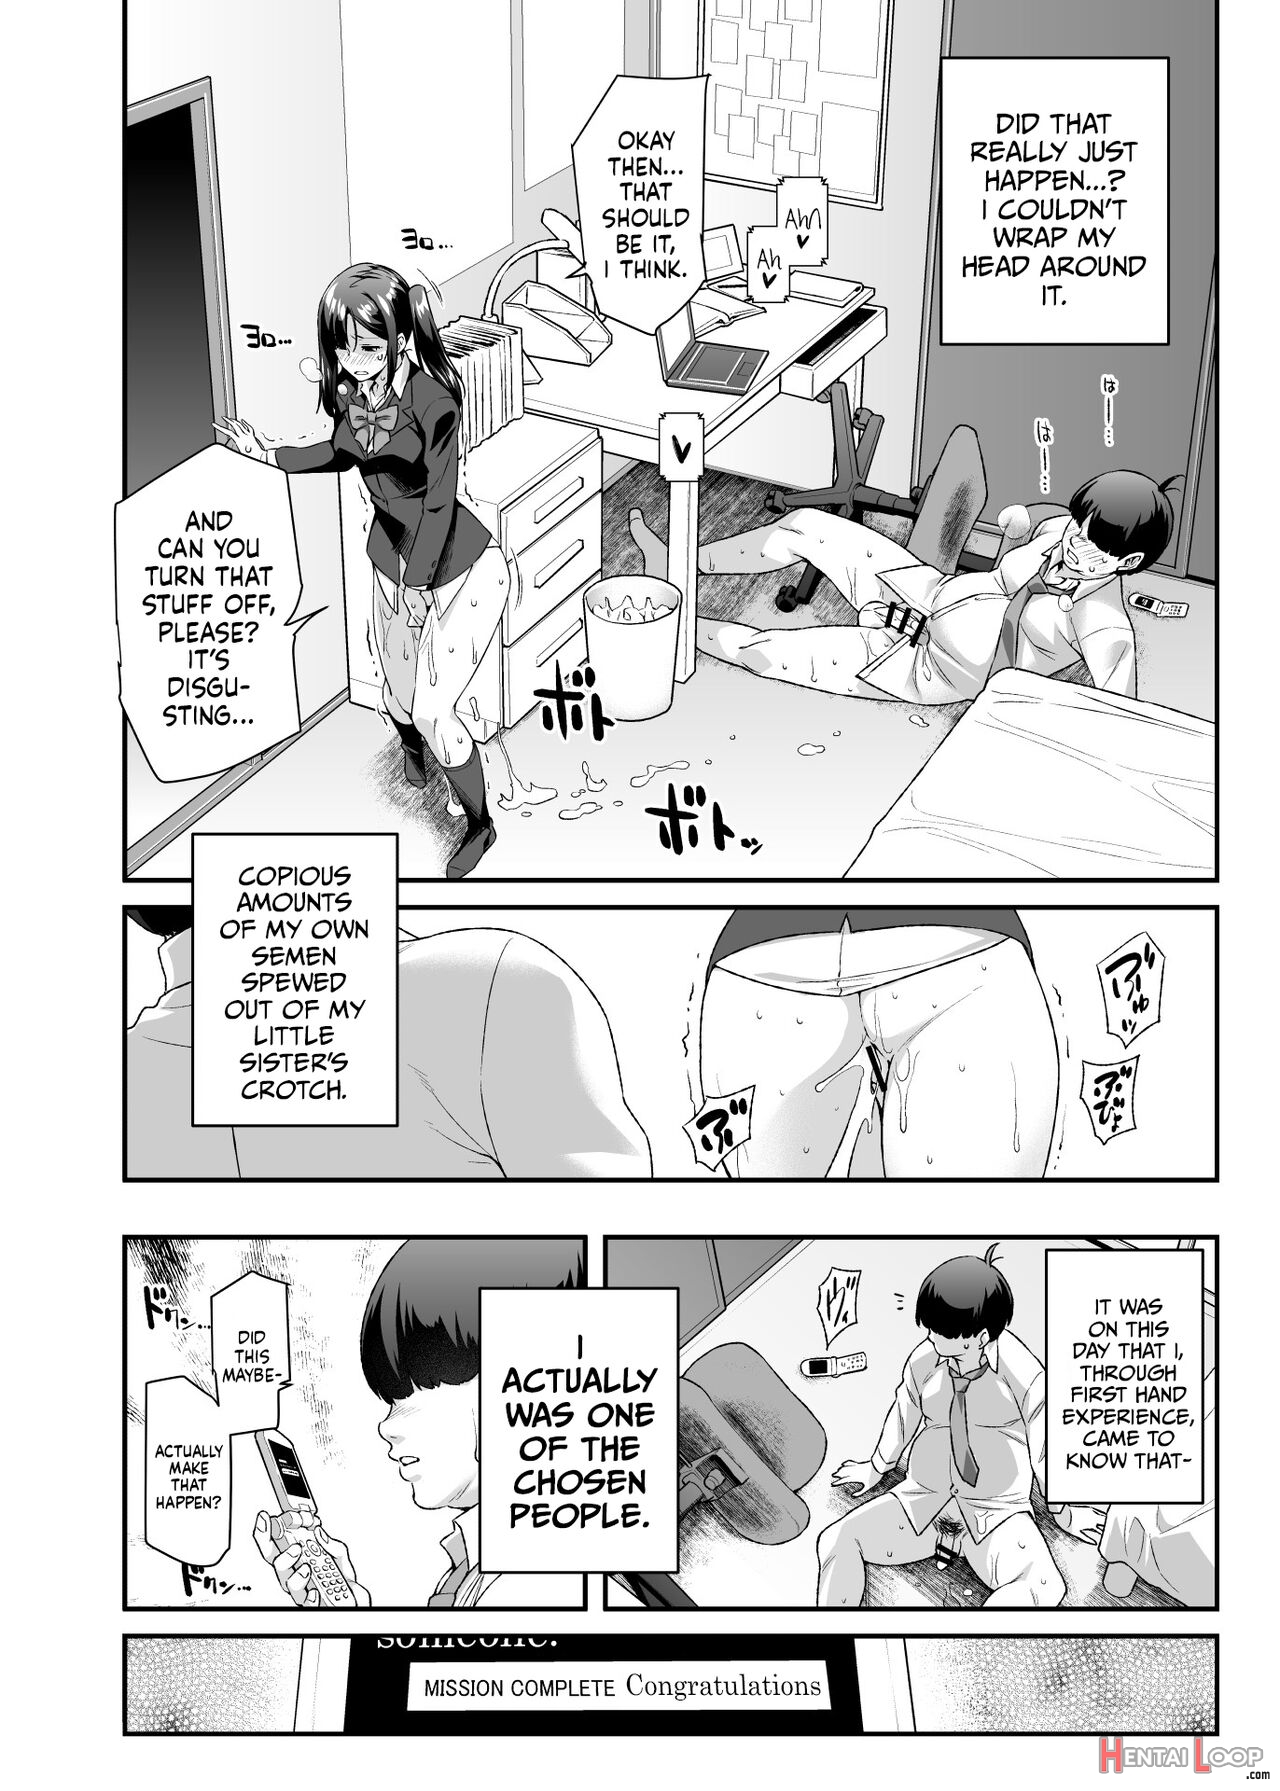 Super Cheat Mission Ex Sono Garake Ni Hyouji Sareta Mission Wa Kanarazu Tassei Dekiru page 11